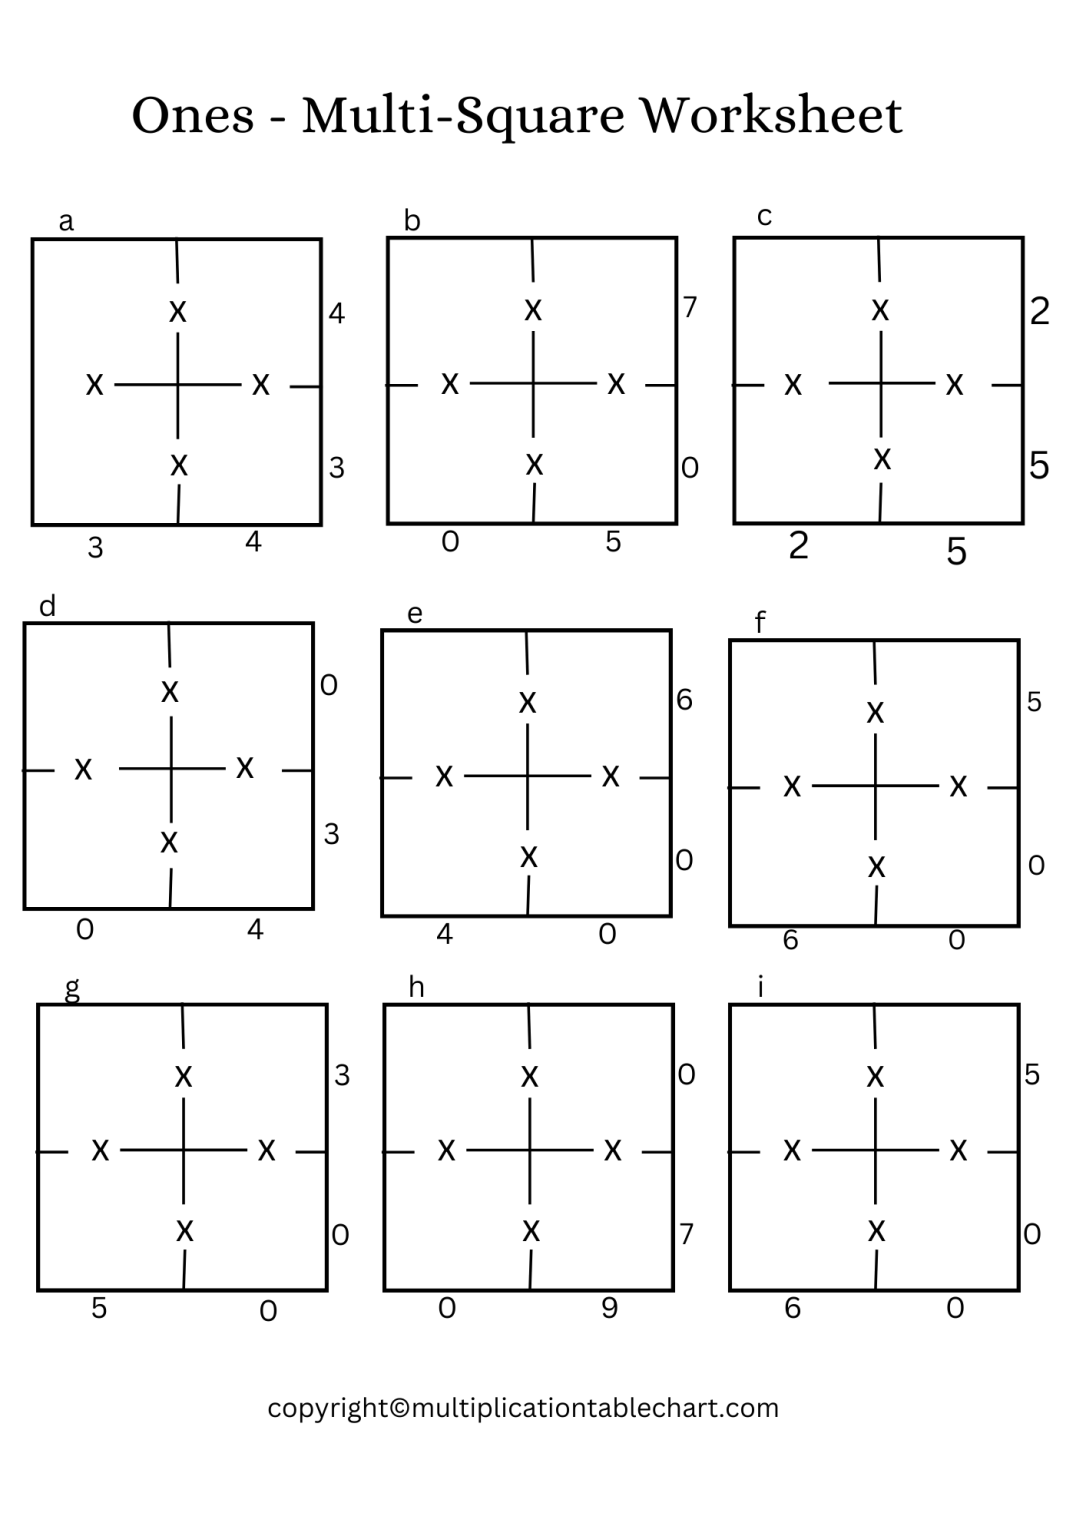 ones-multi-square-worksheet-printable-in-pdf